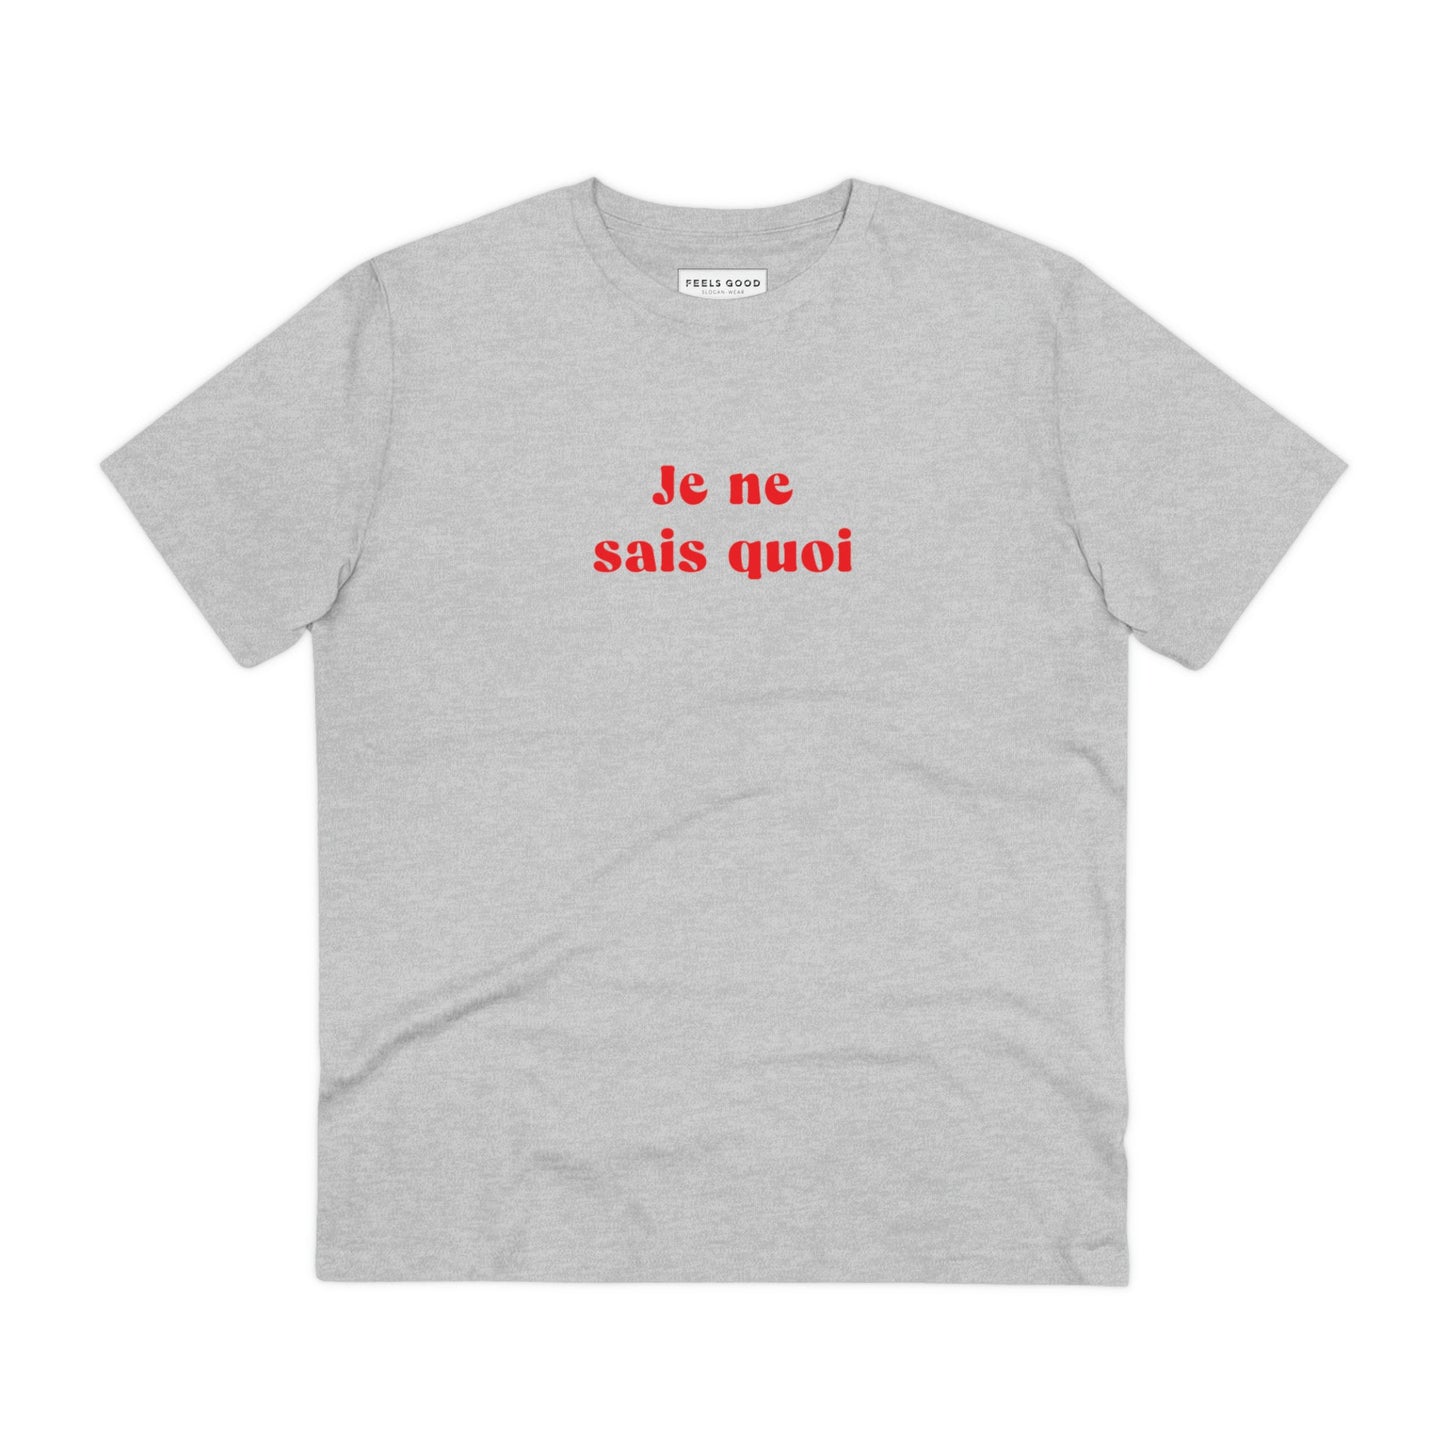 Francophile 'Unique & Special' Organic Cotton T-shirt - Francophile Tshirt